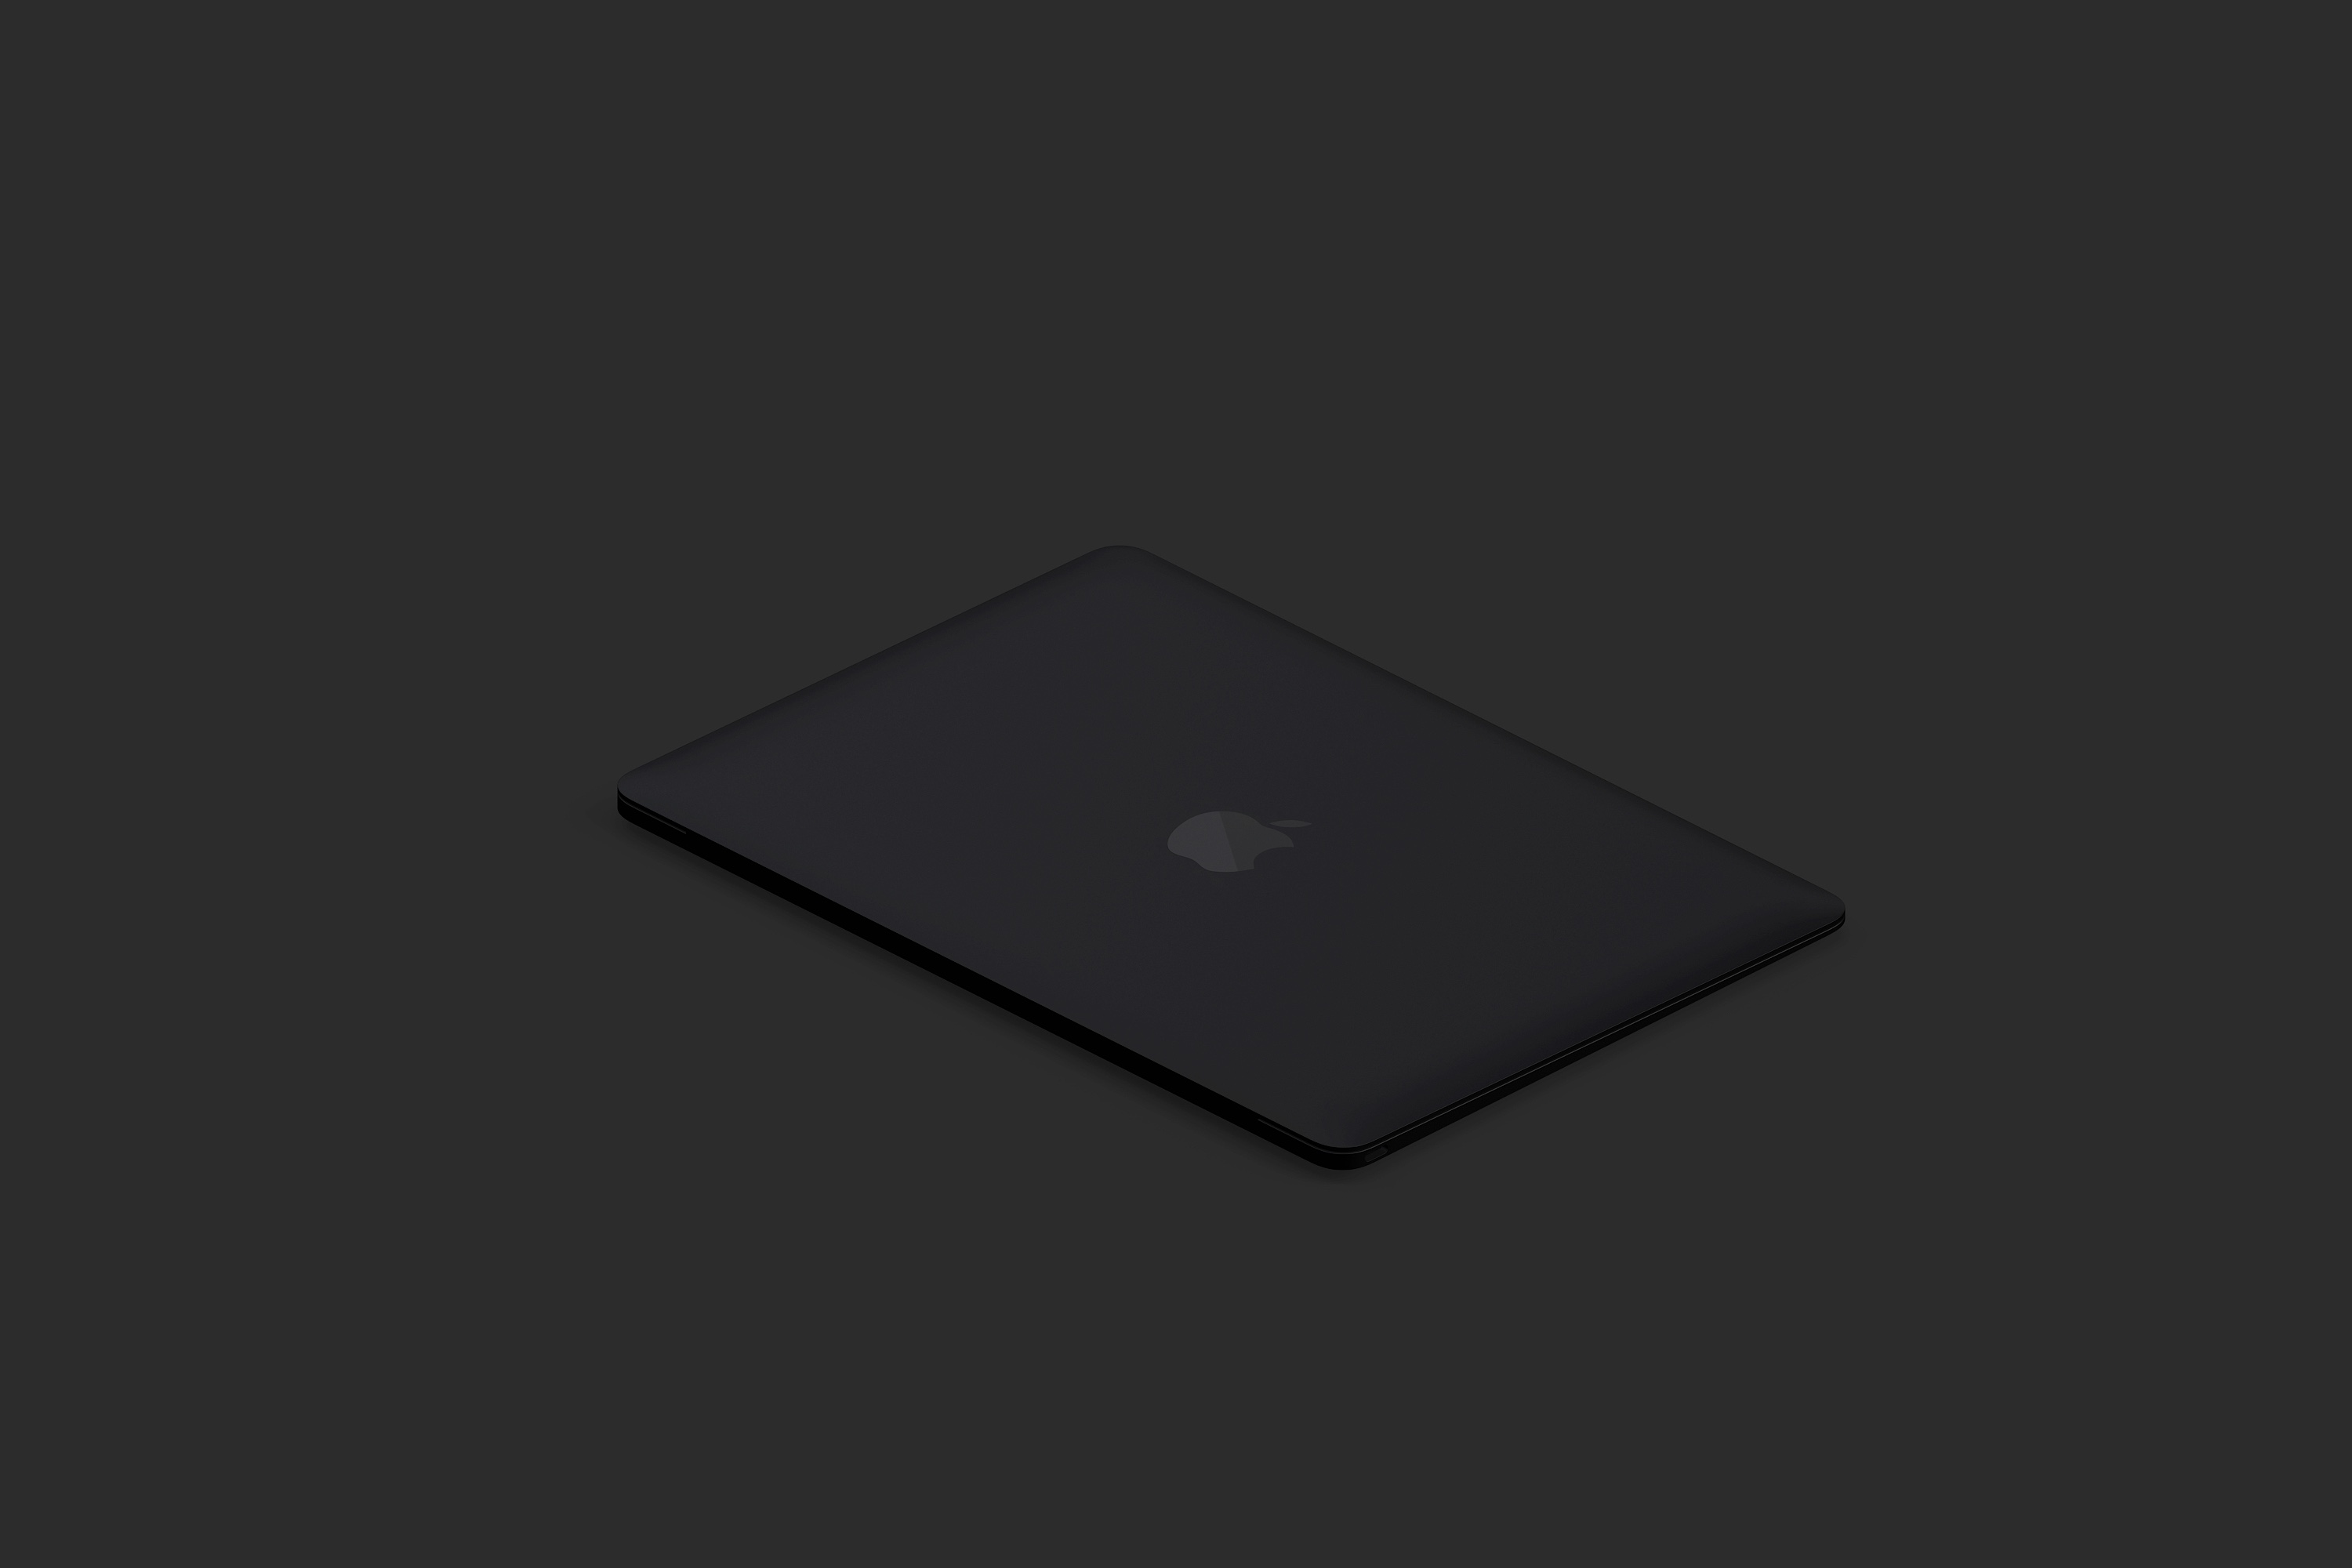 陶瓷材质MacBook笔记本电脑等距右视图样机03 Clay MacBook Mockup, Isometric Right View 03插图(4)